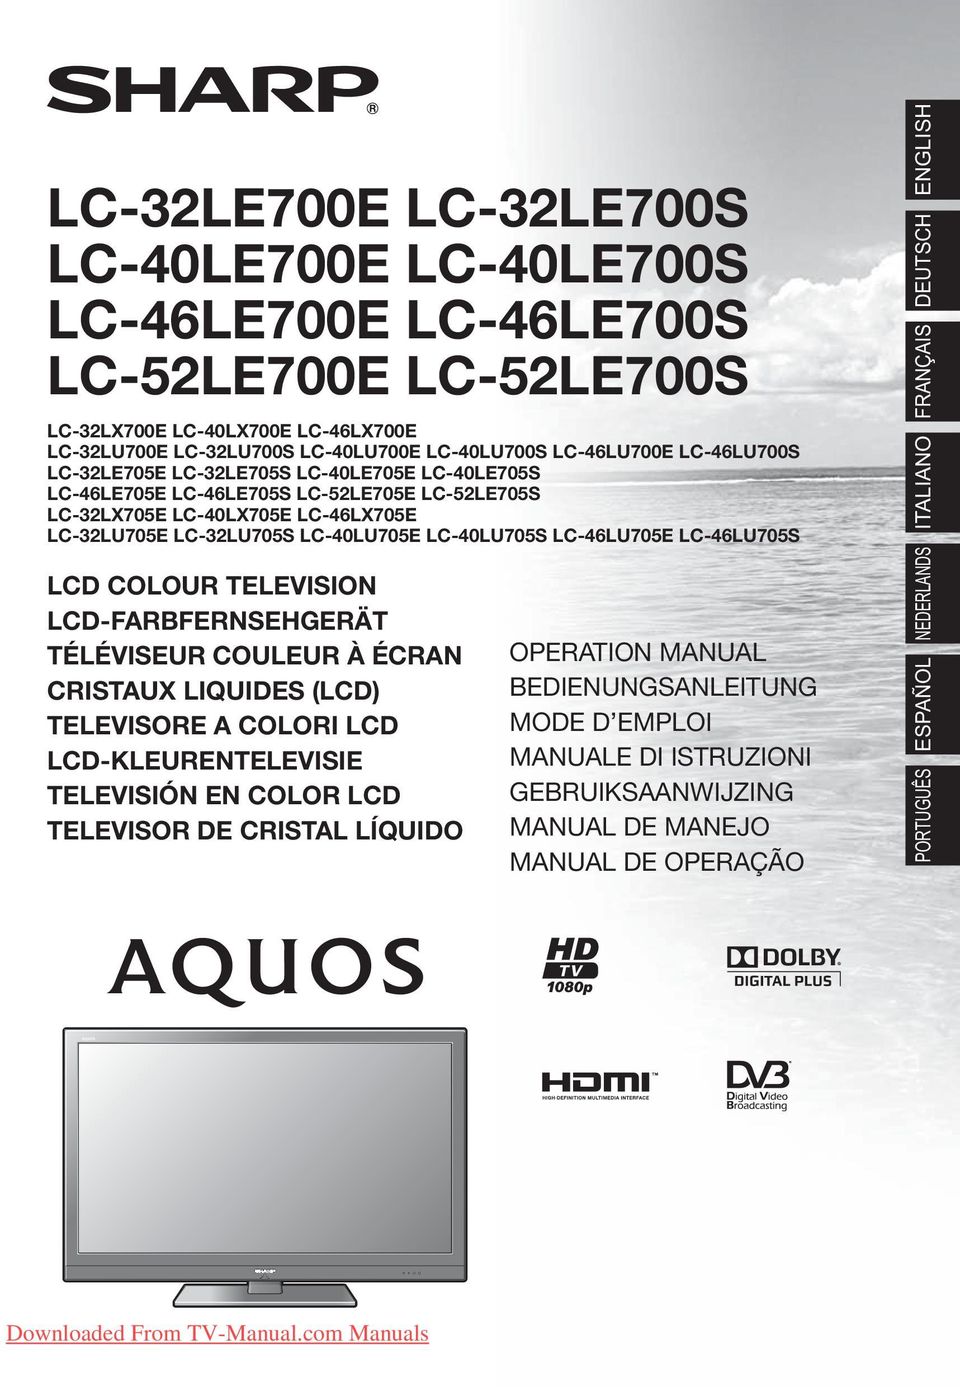 LC-46LU705E LC-46LU705S LCD COLOUR TELEVISION LCD-FARBFERNSEHGERÄT TÉLÉVISEUR COULEUR À ÉCRAN CRISTAUX LIQUIDES (LCD) TELEVISORE A COLORI LCD LCD-KLEURENTELEVISIE TELEVISIÓN EN COLOR LCD TELEVISOR